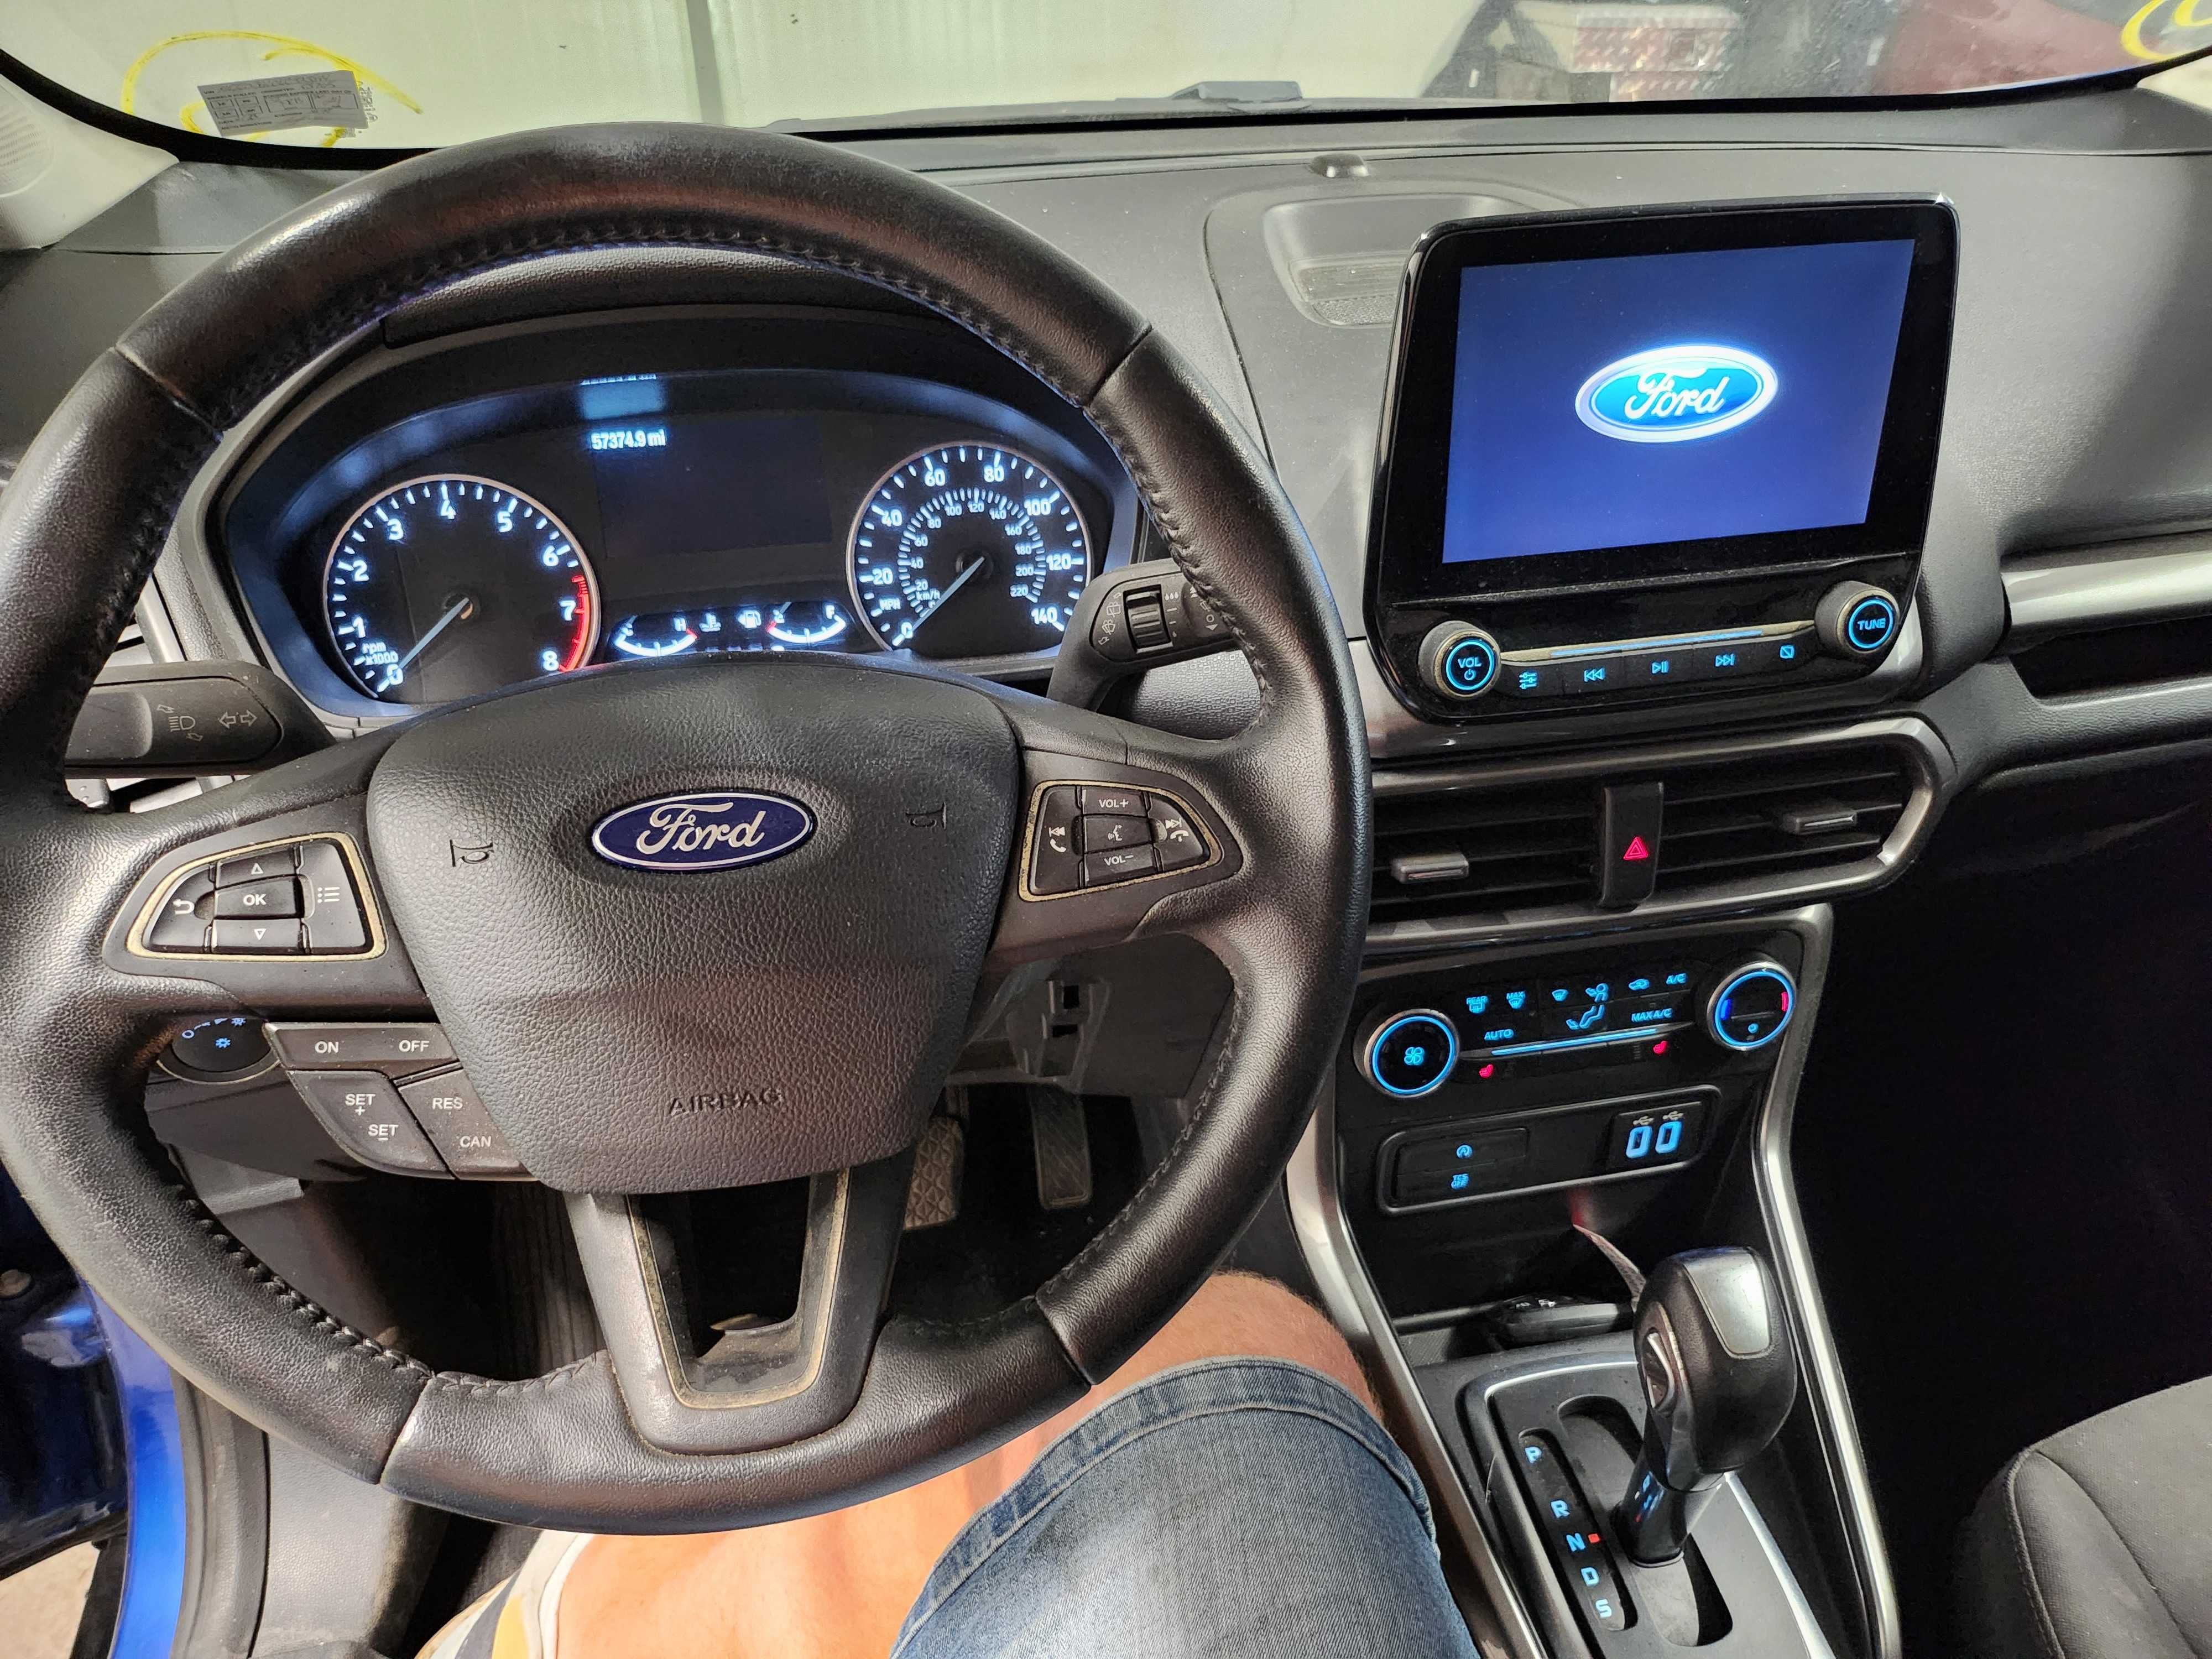 Ford EcoSport, 2,0, 4X4, 166KM + 2020+Okazja